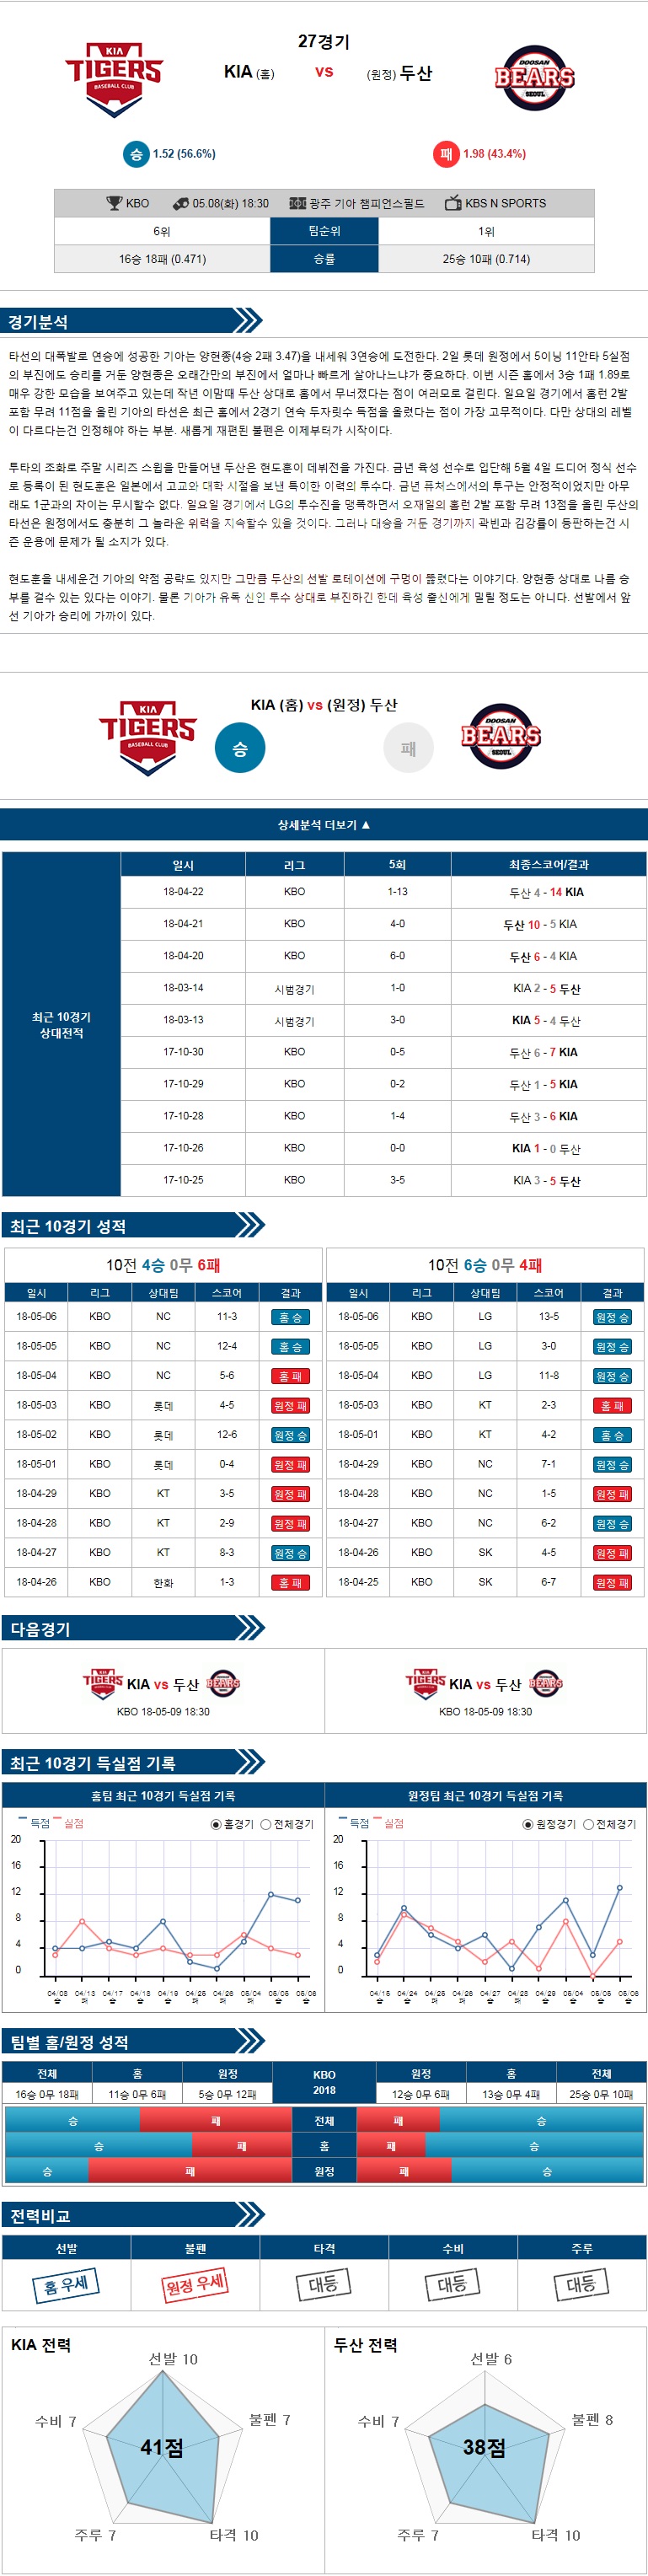 5-08 [KBO] 18:30 야구분석 KIA vs 두산